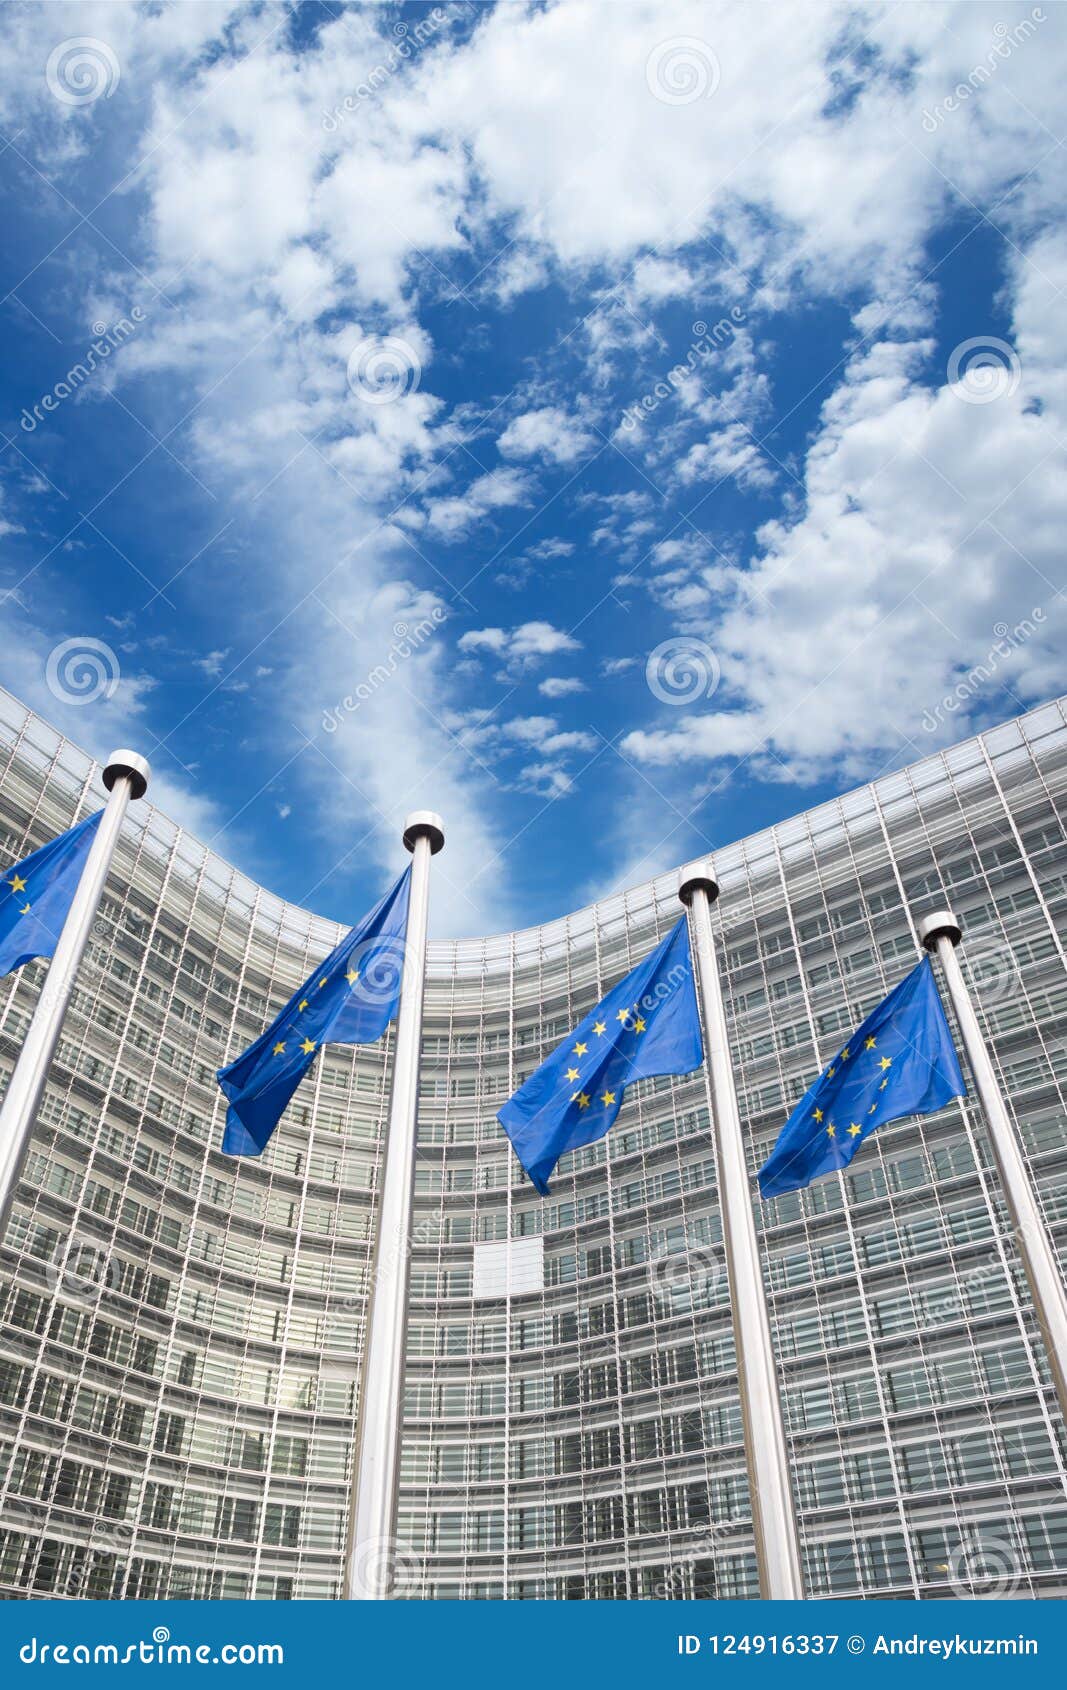 eu flags in front of berlaymont building, brussels, belgium